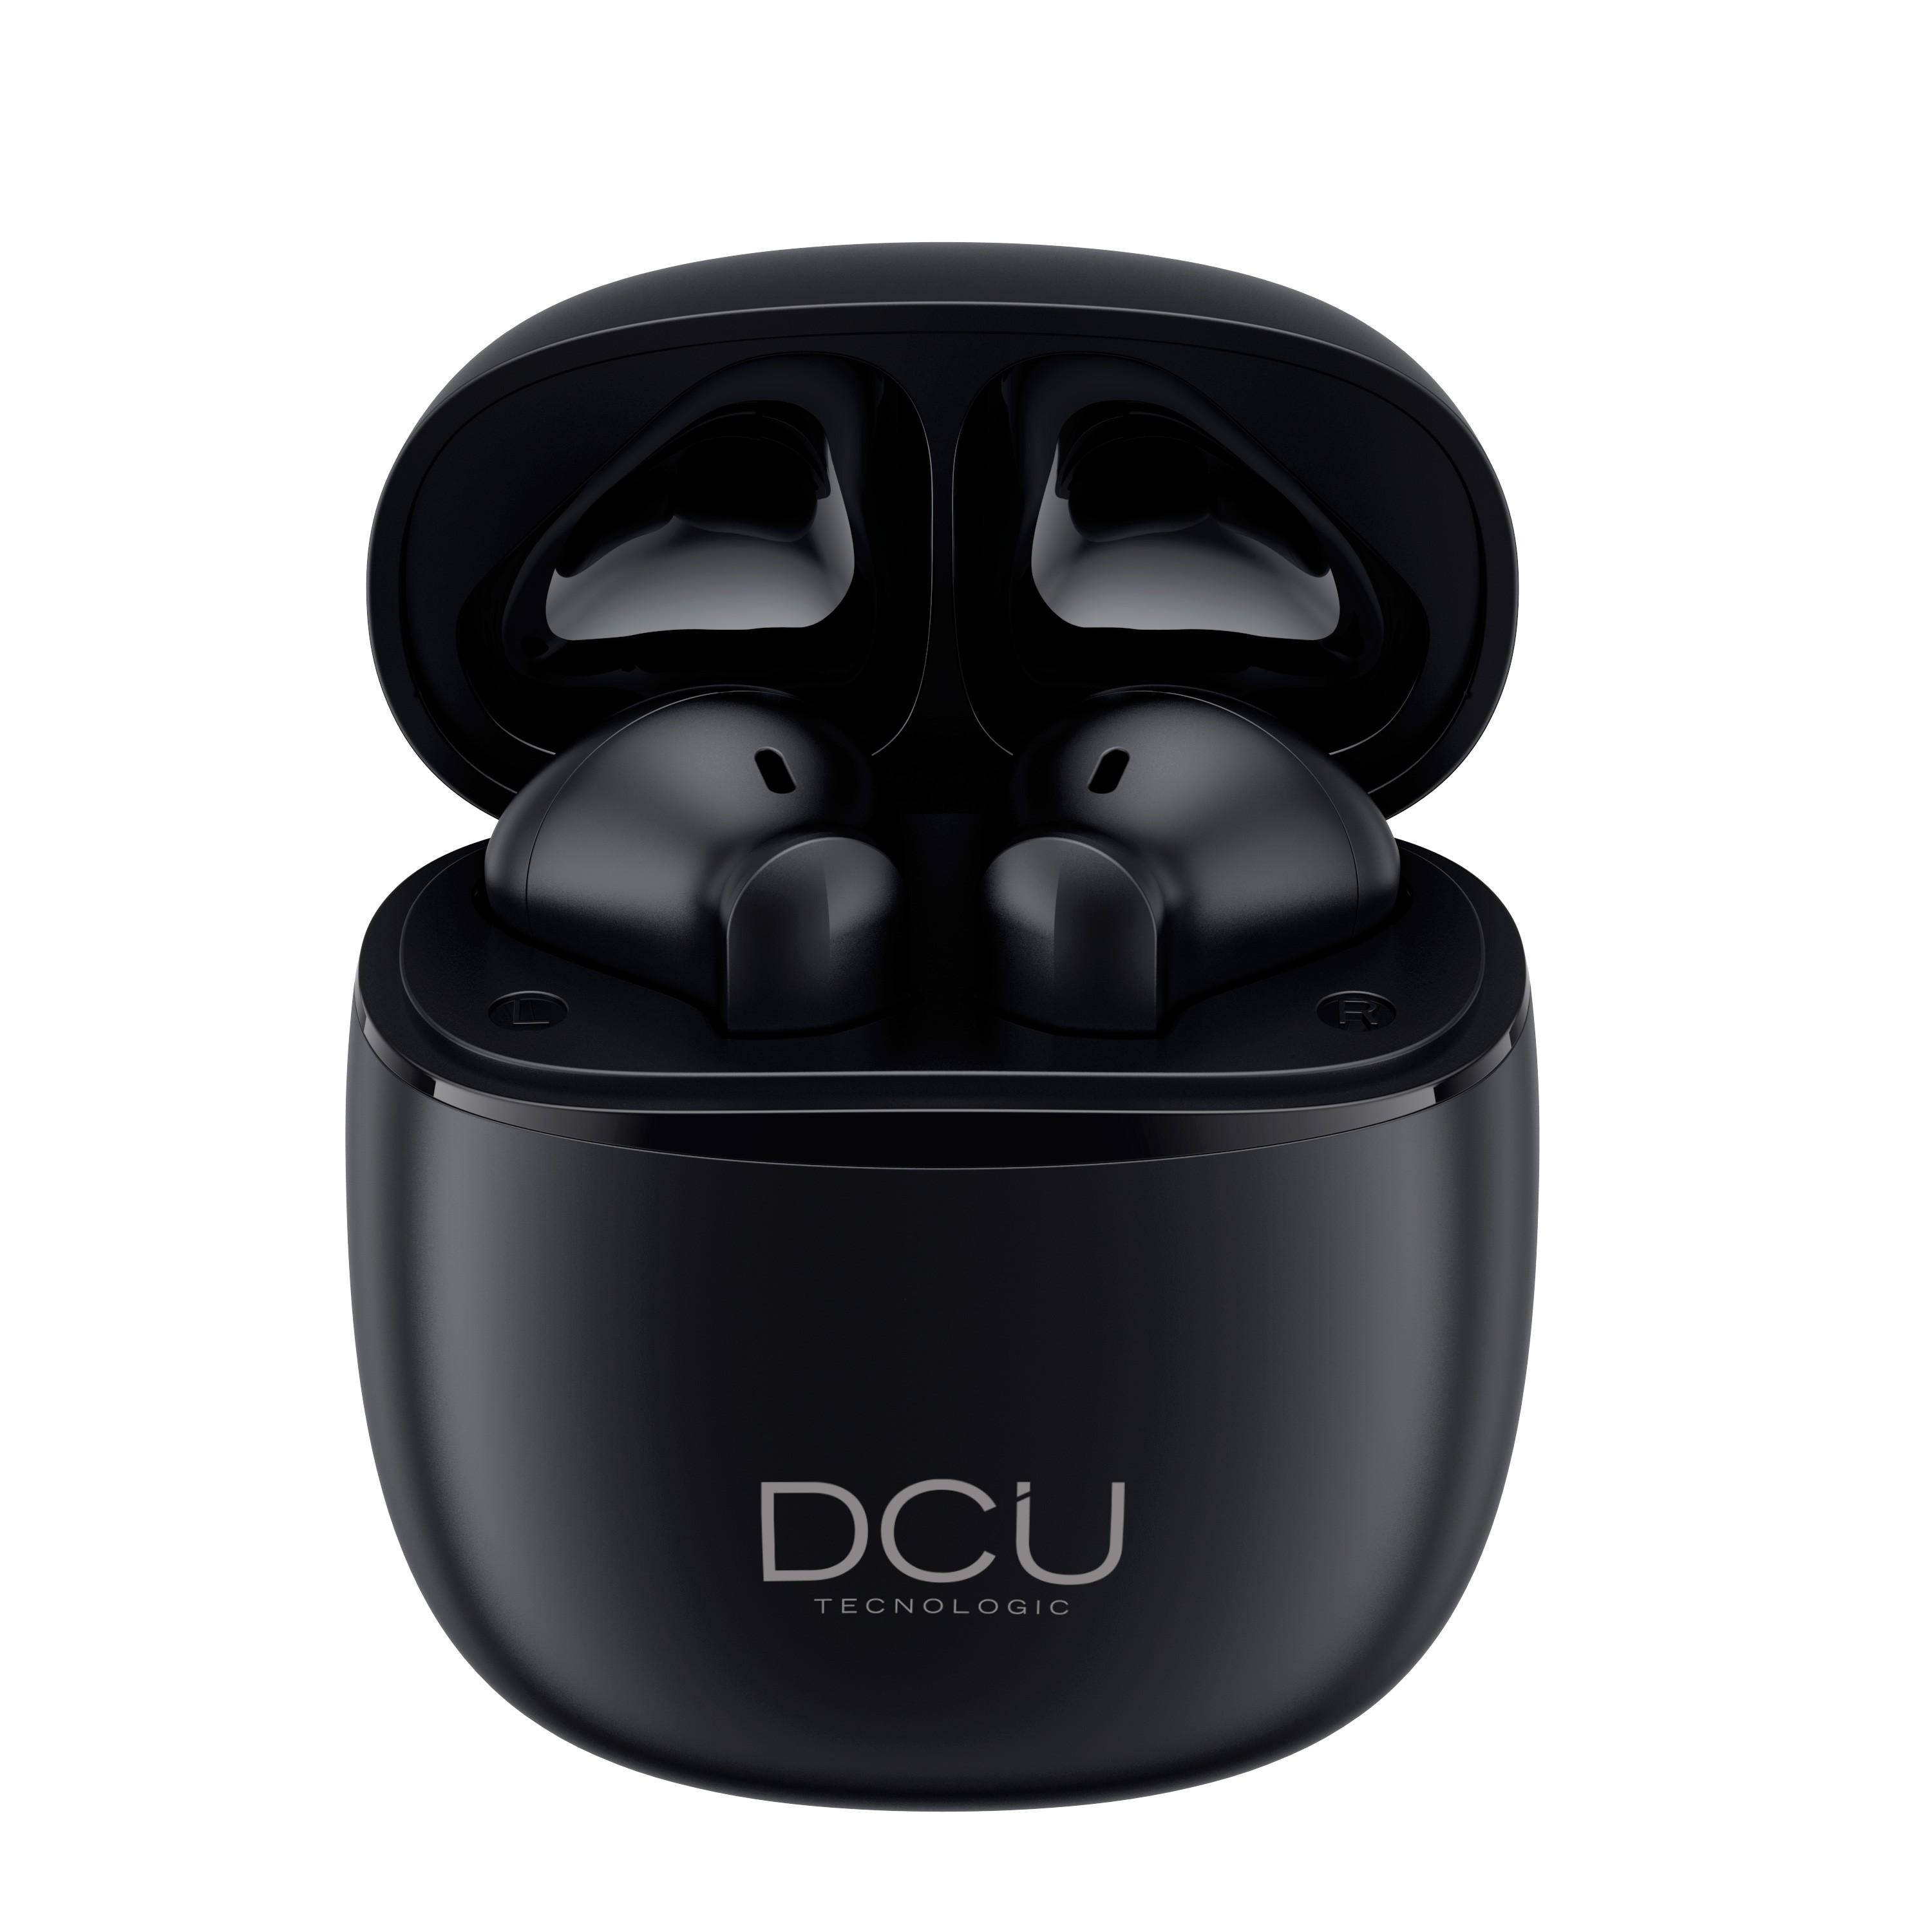 Casque Bluetooth 5.1 DCU Tecnologic Mini Mate - Liberté et confort pour votre musique préférée - Version V5.1 - Batterie longue durée - Haut-parleur 10 mm - Portée Bluetooth 10 m - Couleur Noir